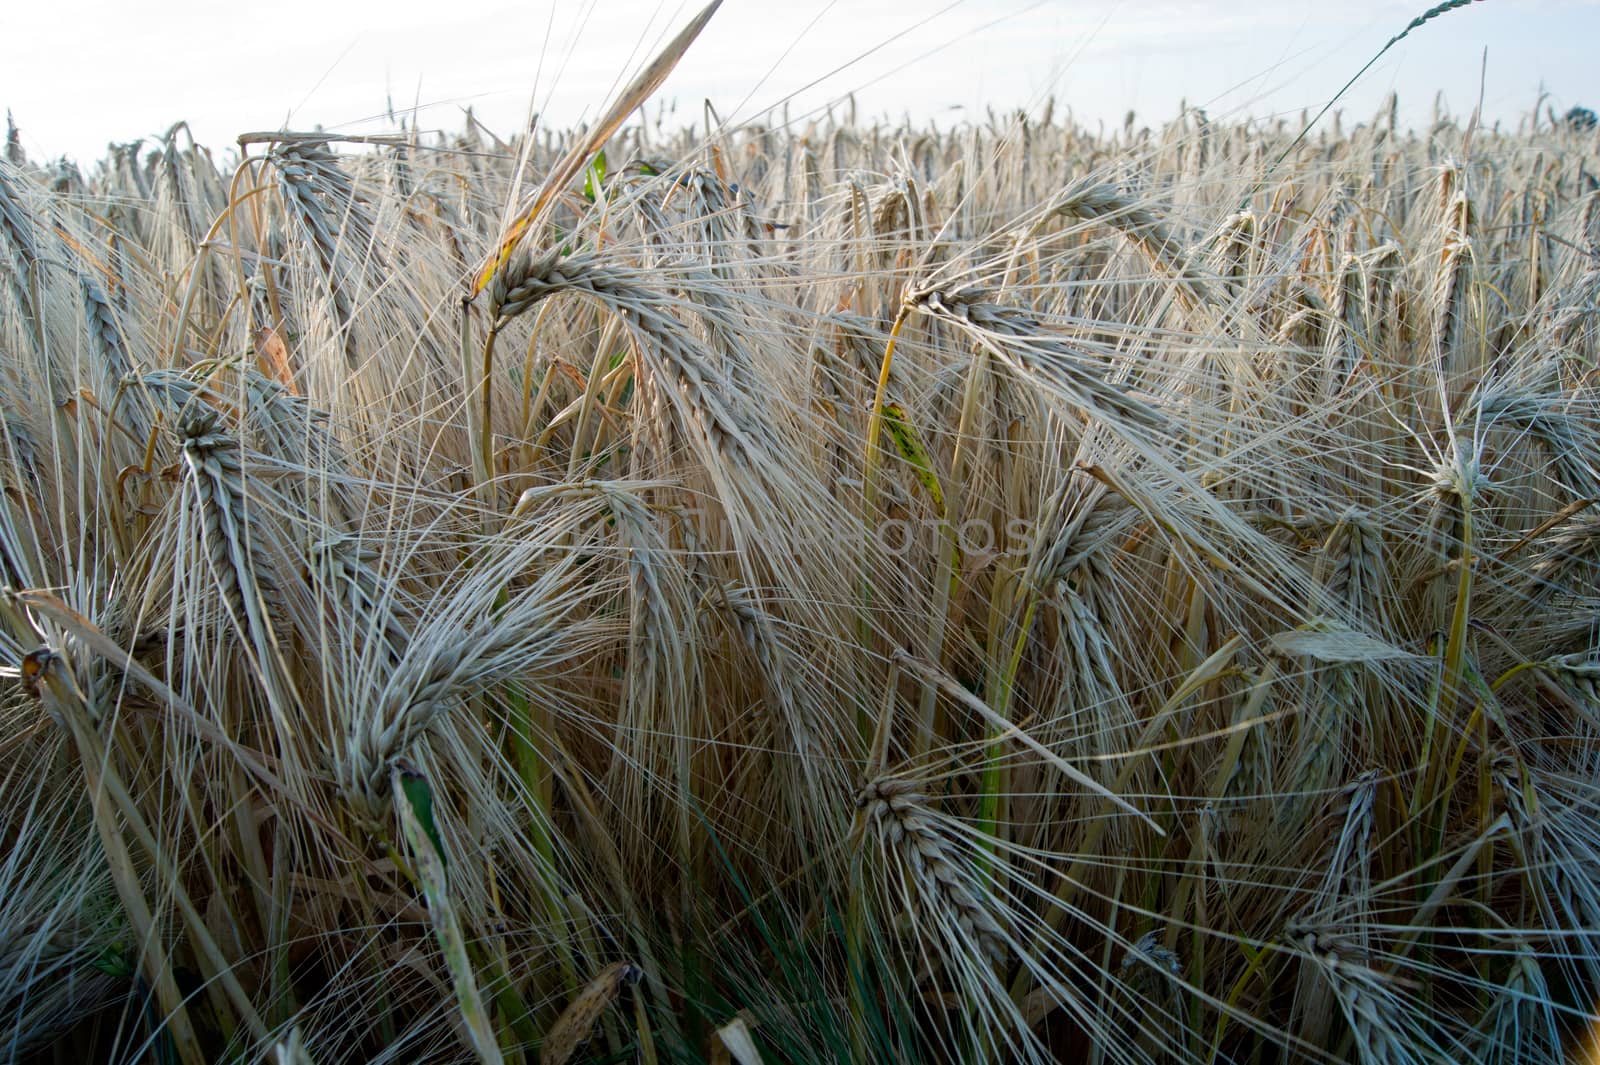 The mature before winter barley (Hordeum vulgare L.) harvests.